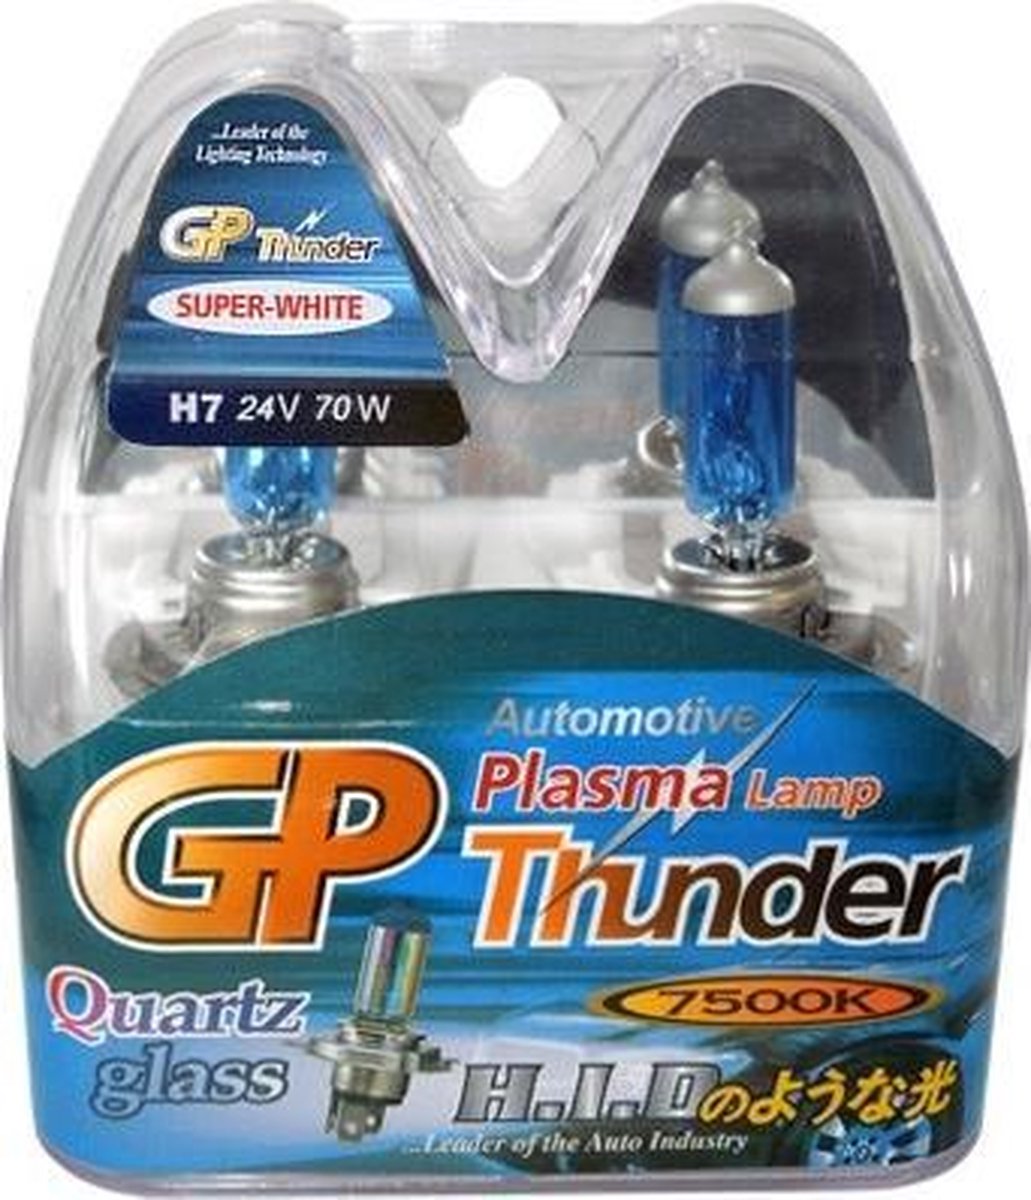 GP Thunder H4 Xenon Look 7500k 24v